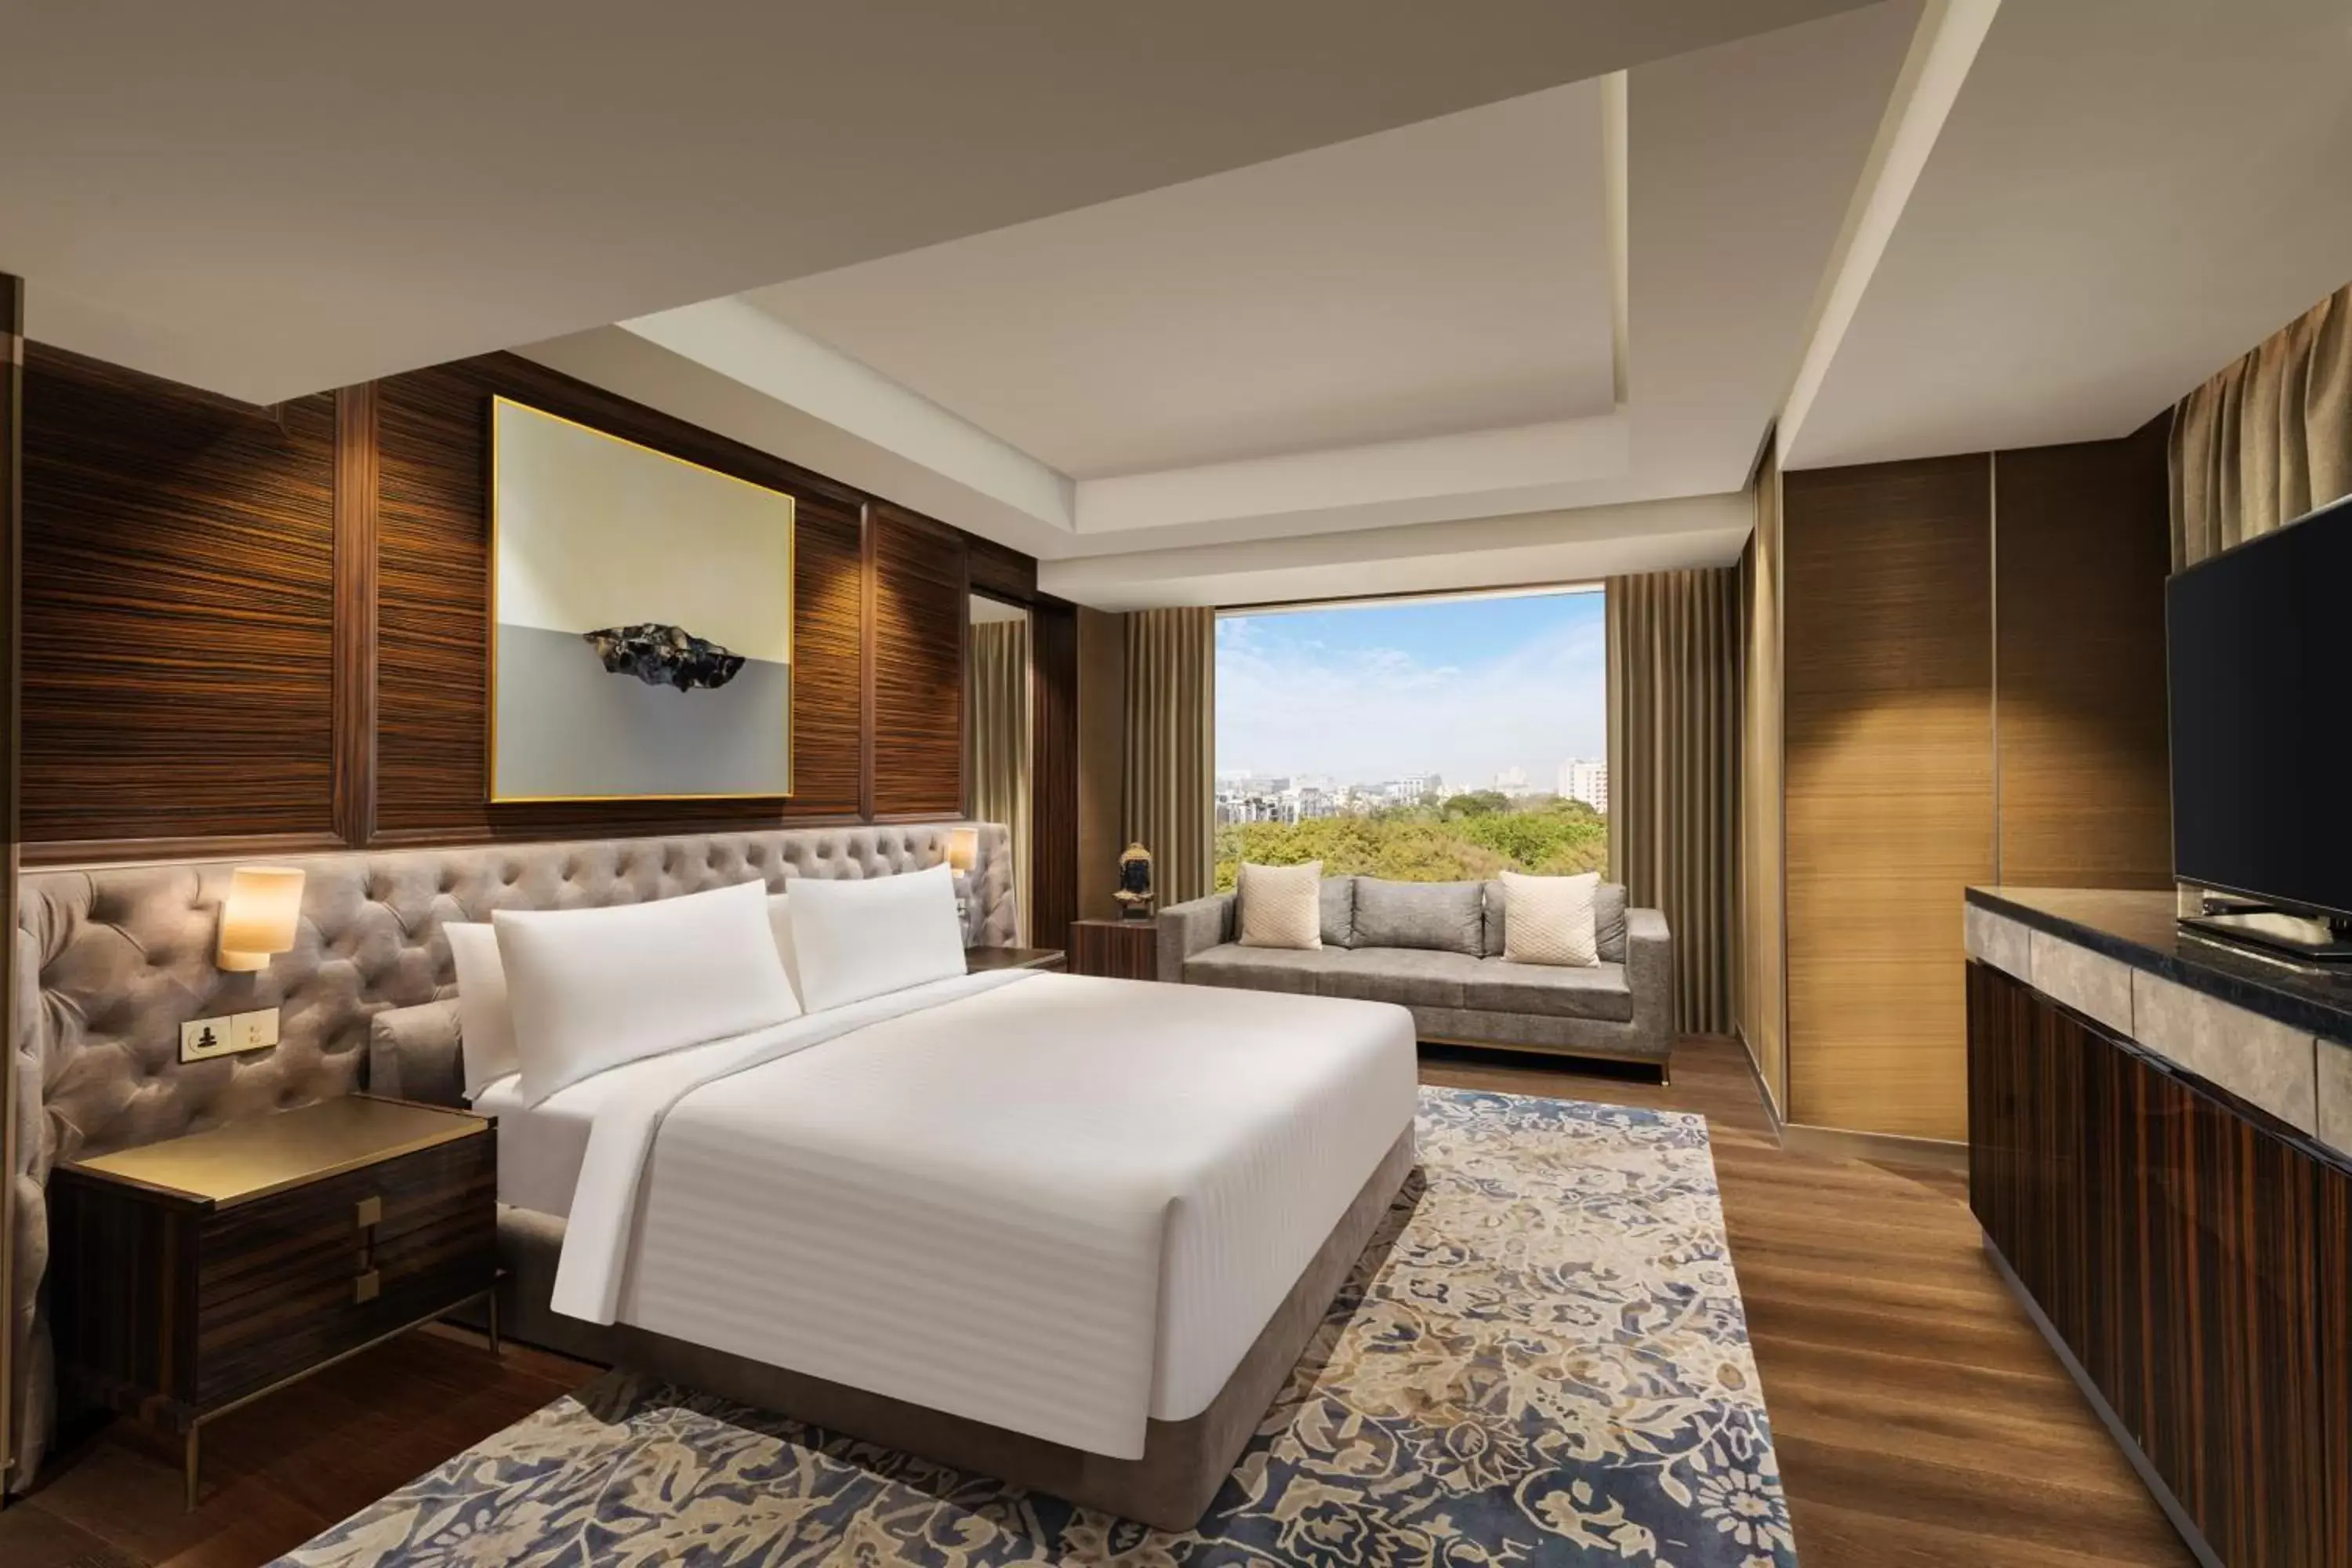 Bedroom in Indore Marriott Hotel